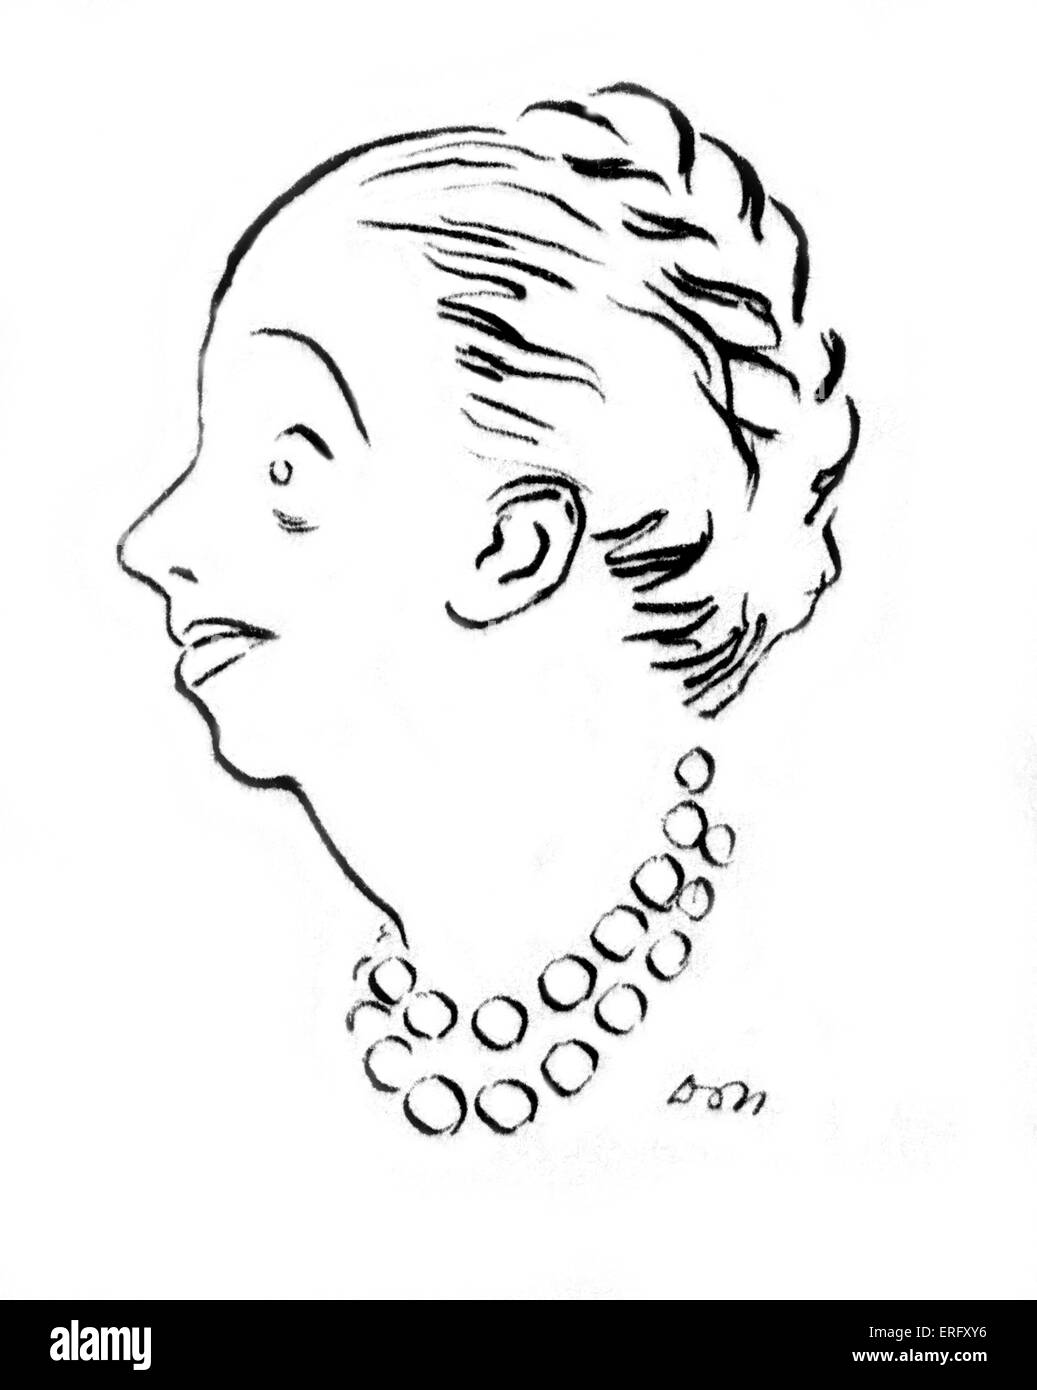 Le dessin des lignes de la créatrice de mode française, Jeanne Lanvin, célèbre dans les années 1920 et 1930. B 1 Janvier 1867- 6 juillet 1946. À partir de la Woman's magazine, Marie Claire, No.82, Septembre 23, 1938. Banque D'Images